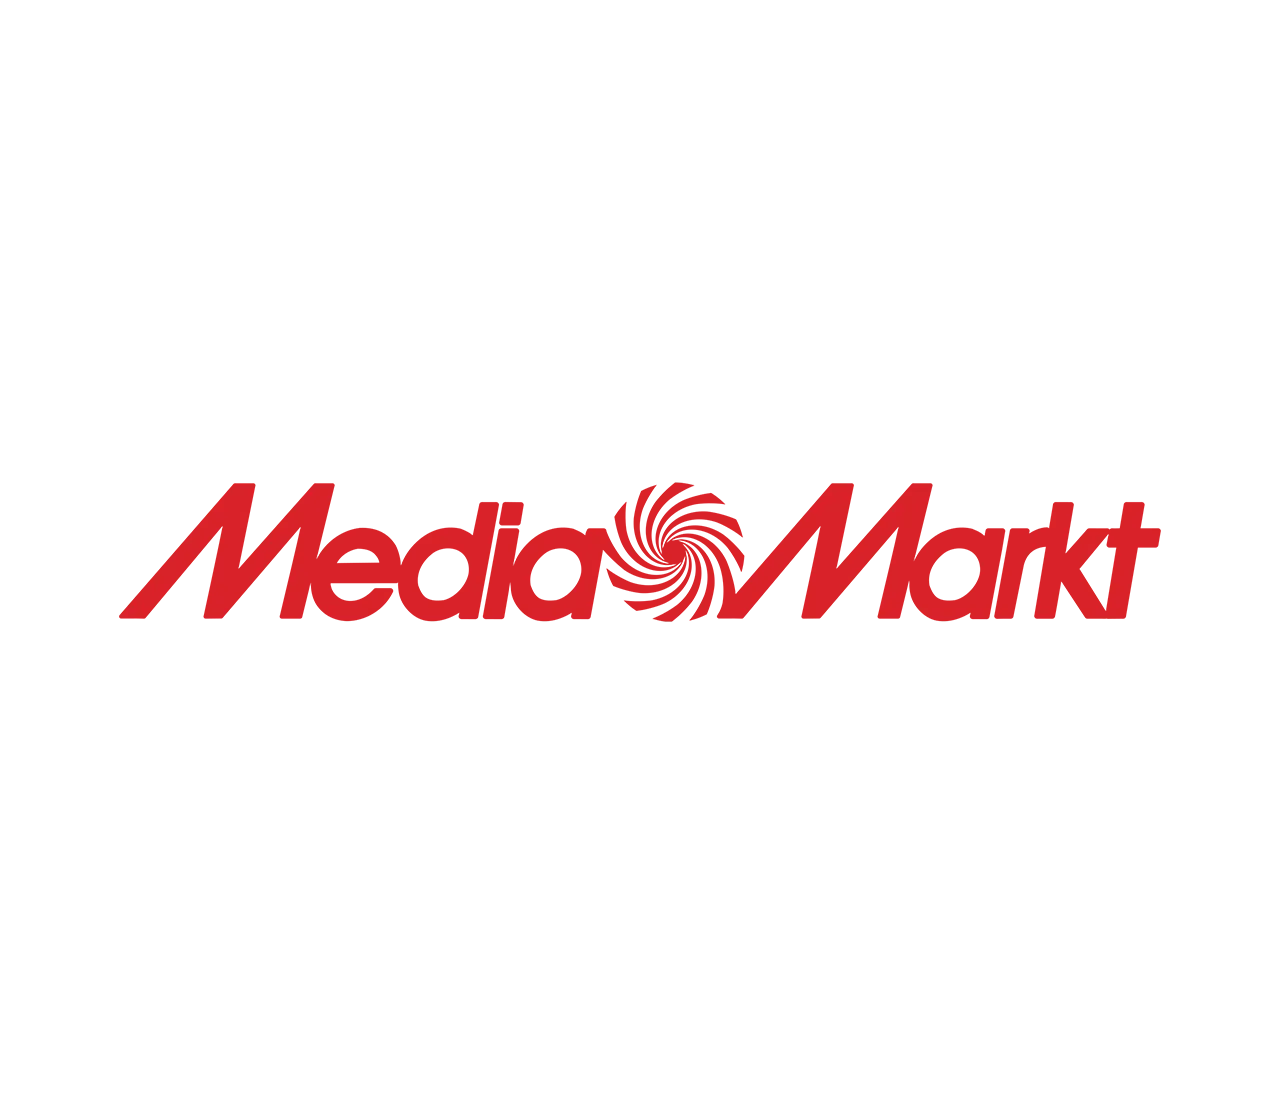 MediaMarkt result